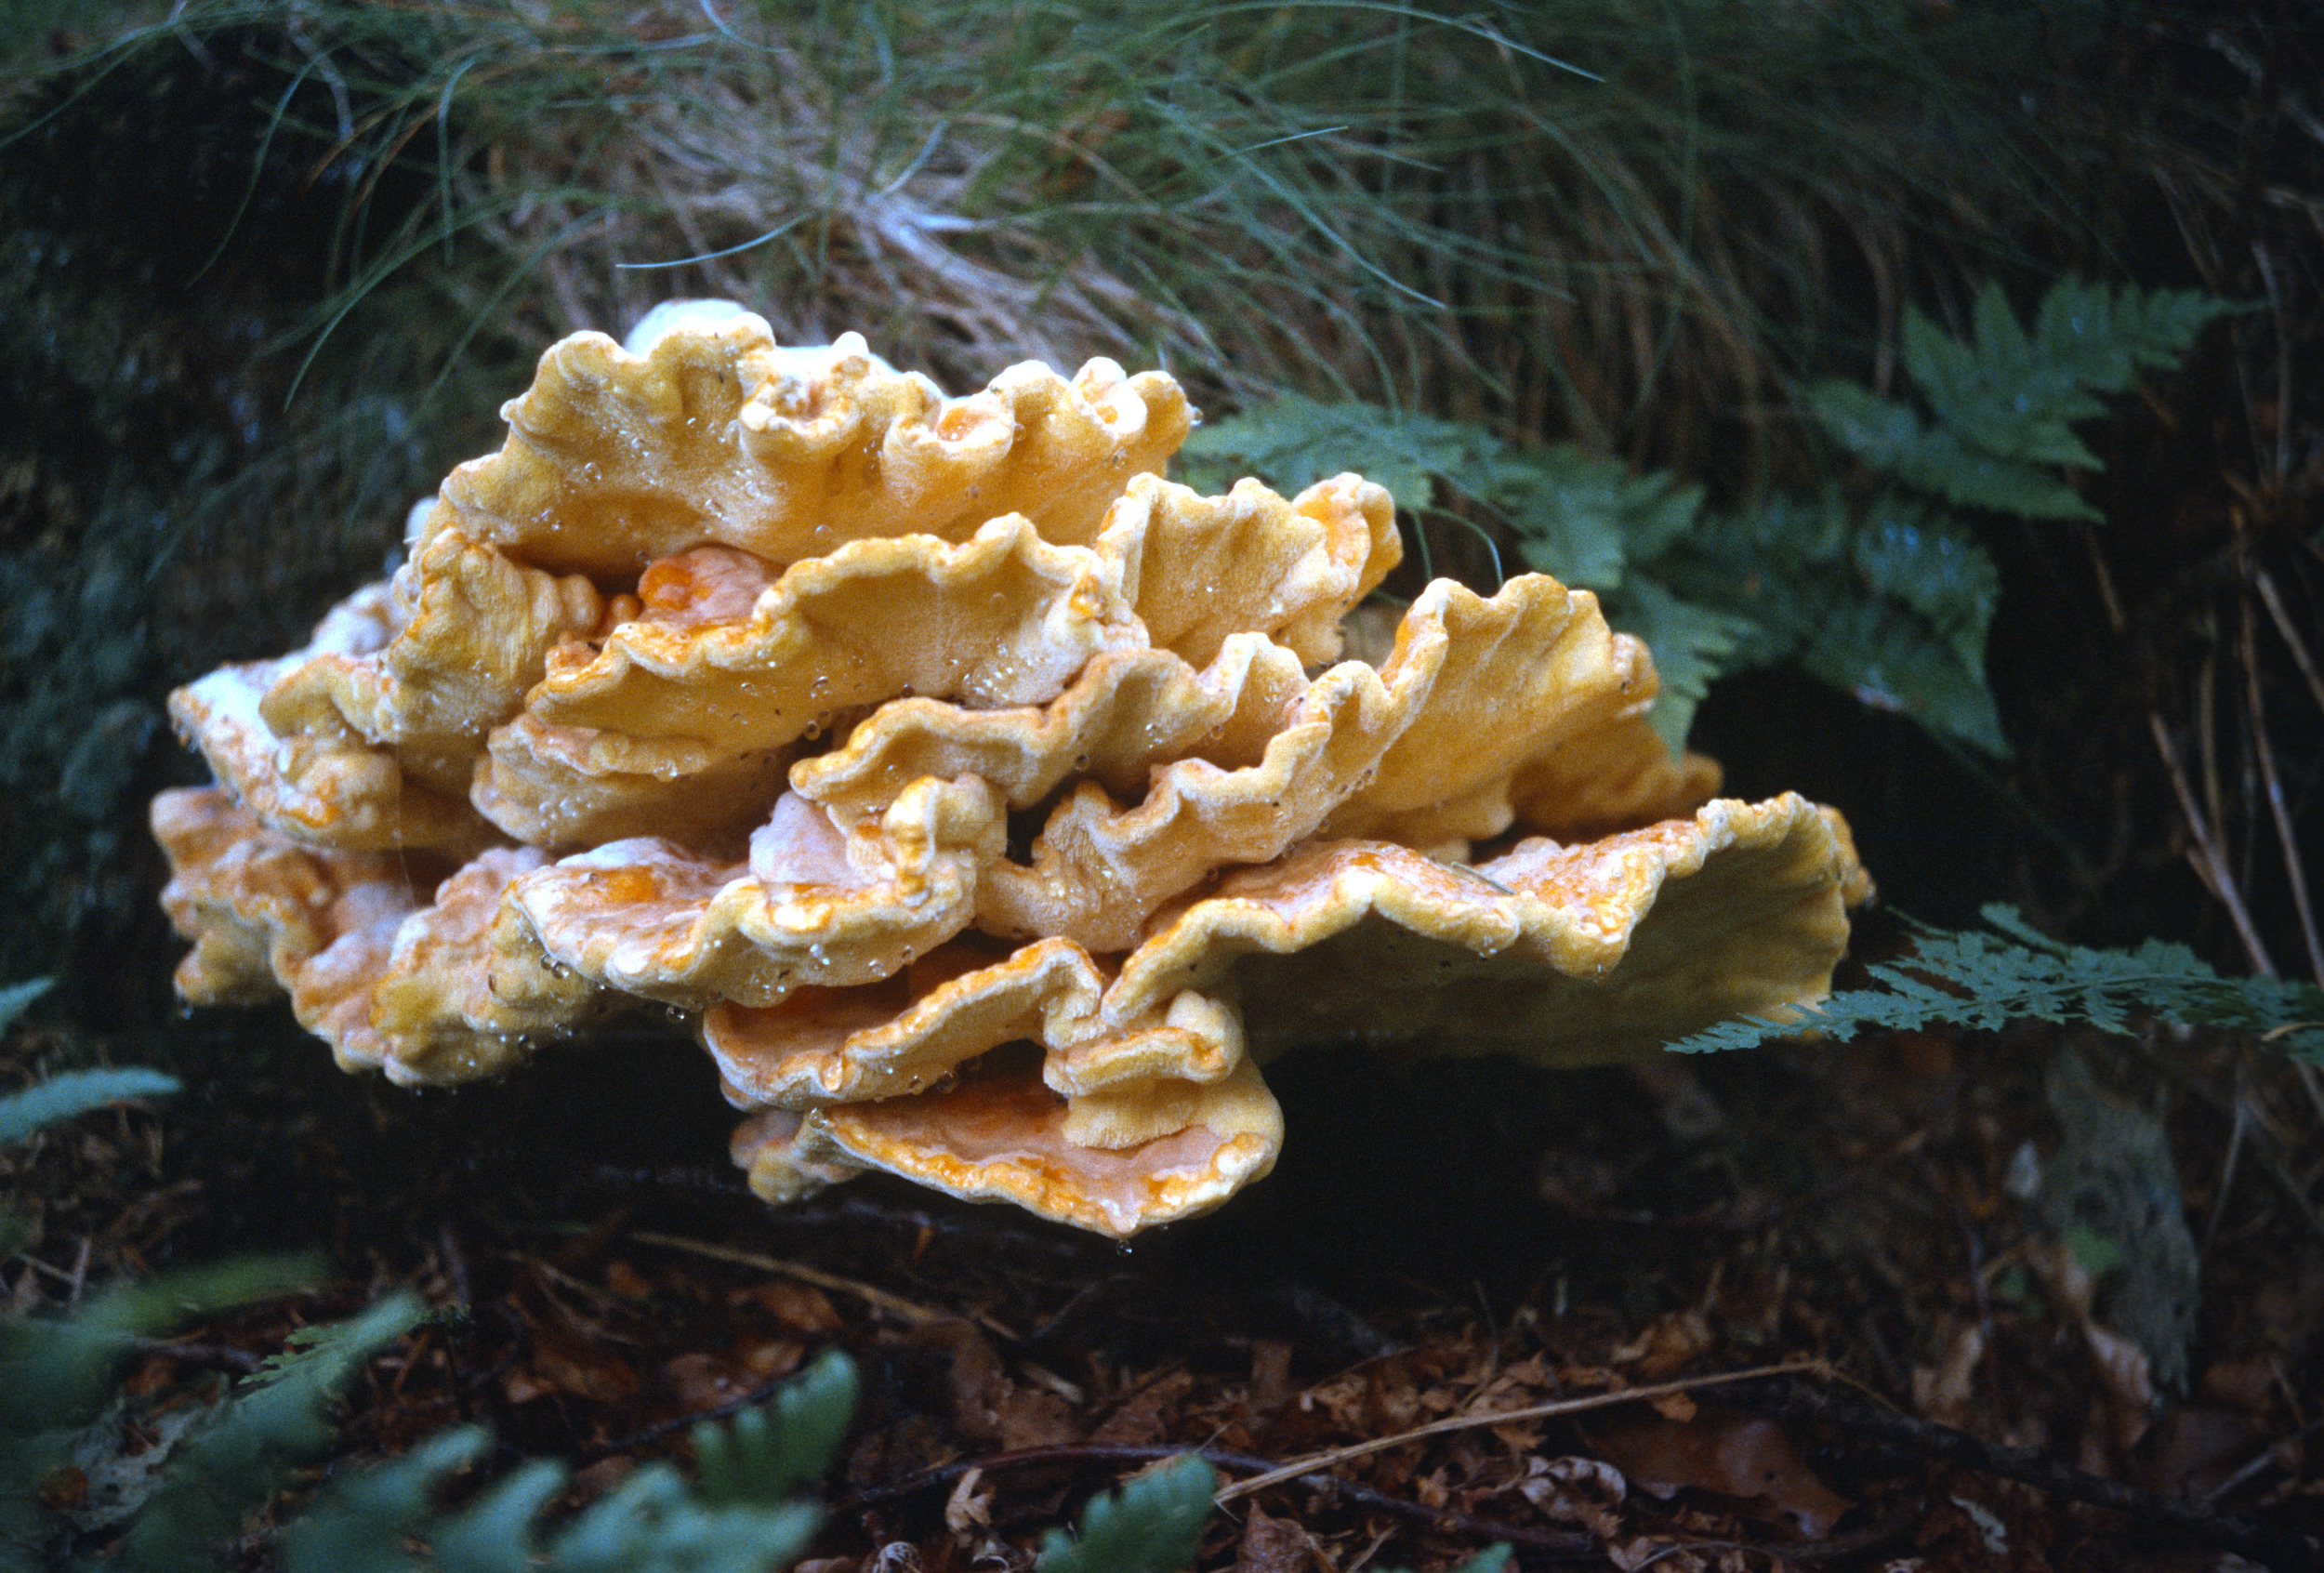  Ripe Fungi, 1998 